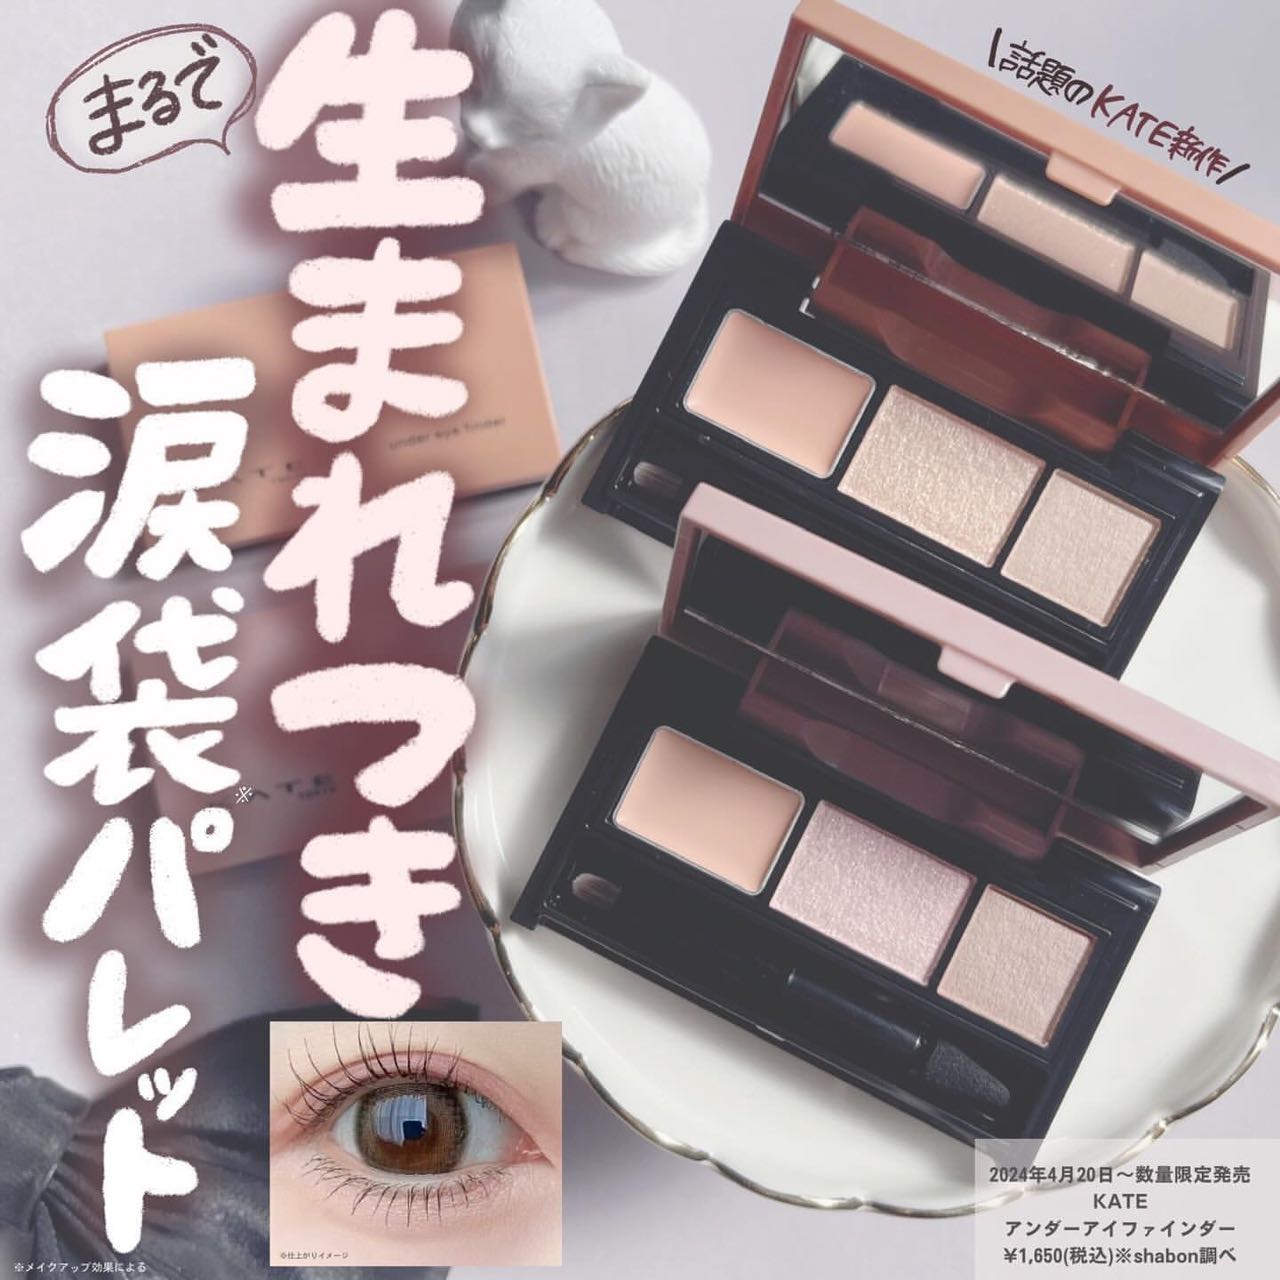 现货包邮日本KATE凯朵24年春季限定三色提亮卧蚕盘眼影盘4.20发售